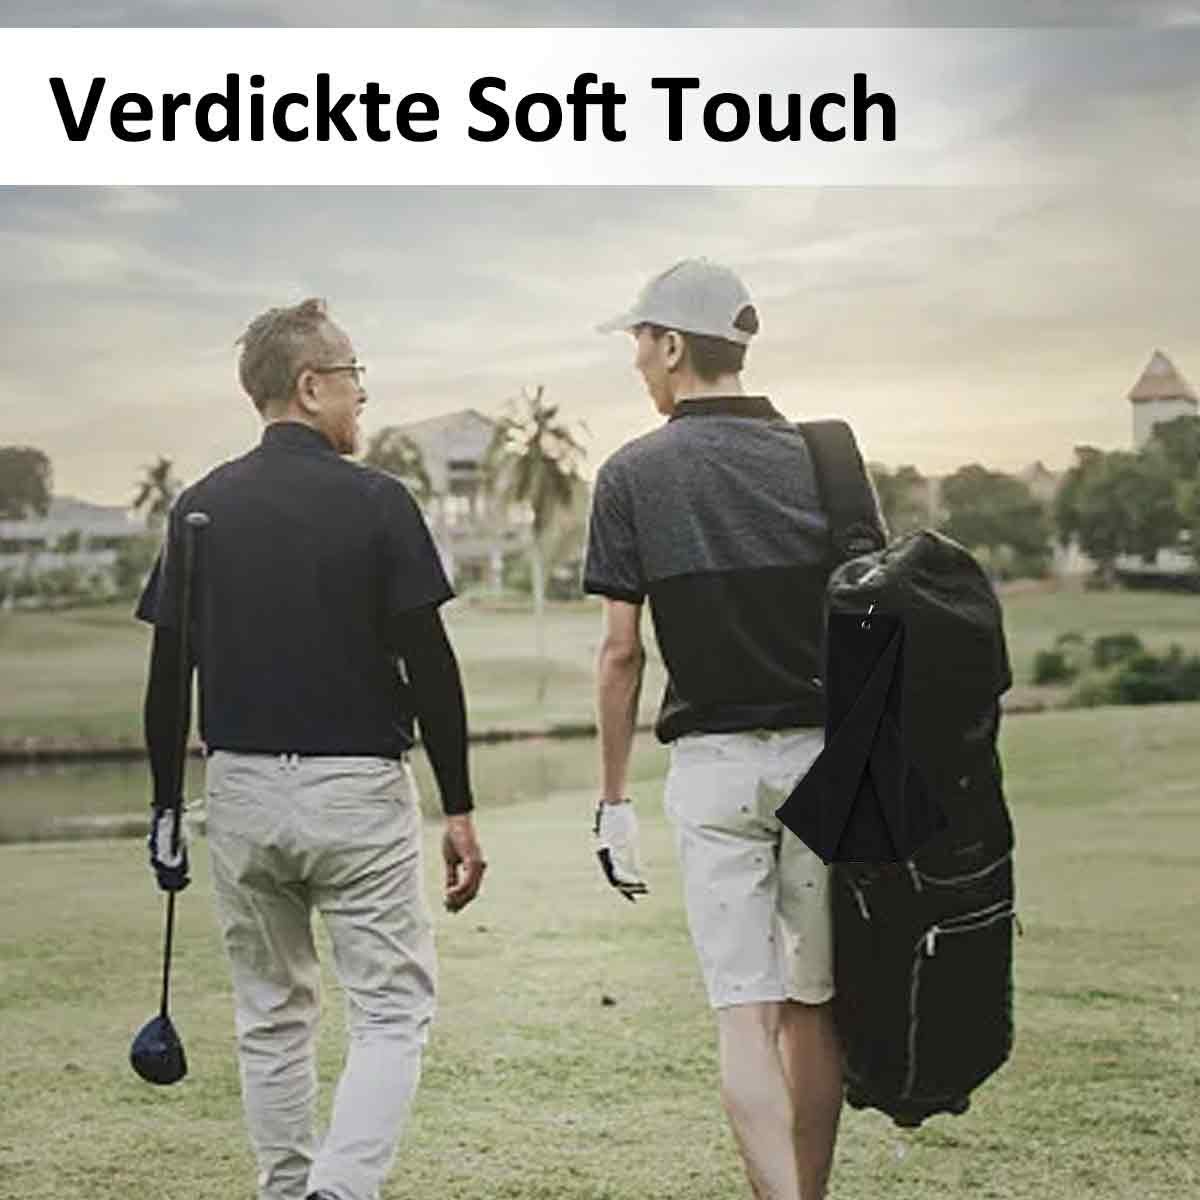 Jormftte Handtücher Gefaltetes Golfhandtuch,Premium Mikrofaser Stoff,Waffelmuster Schwarz